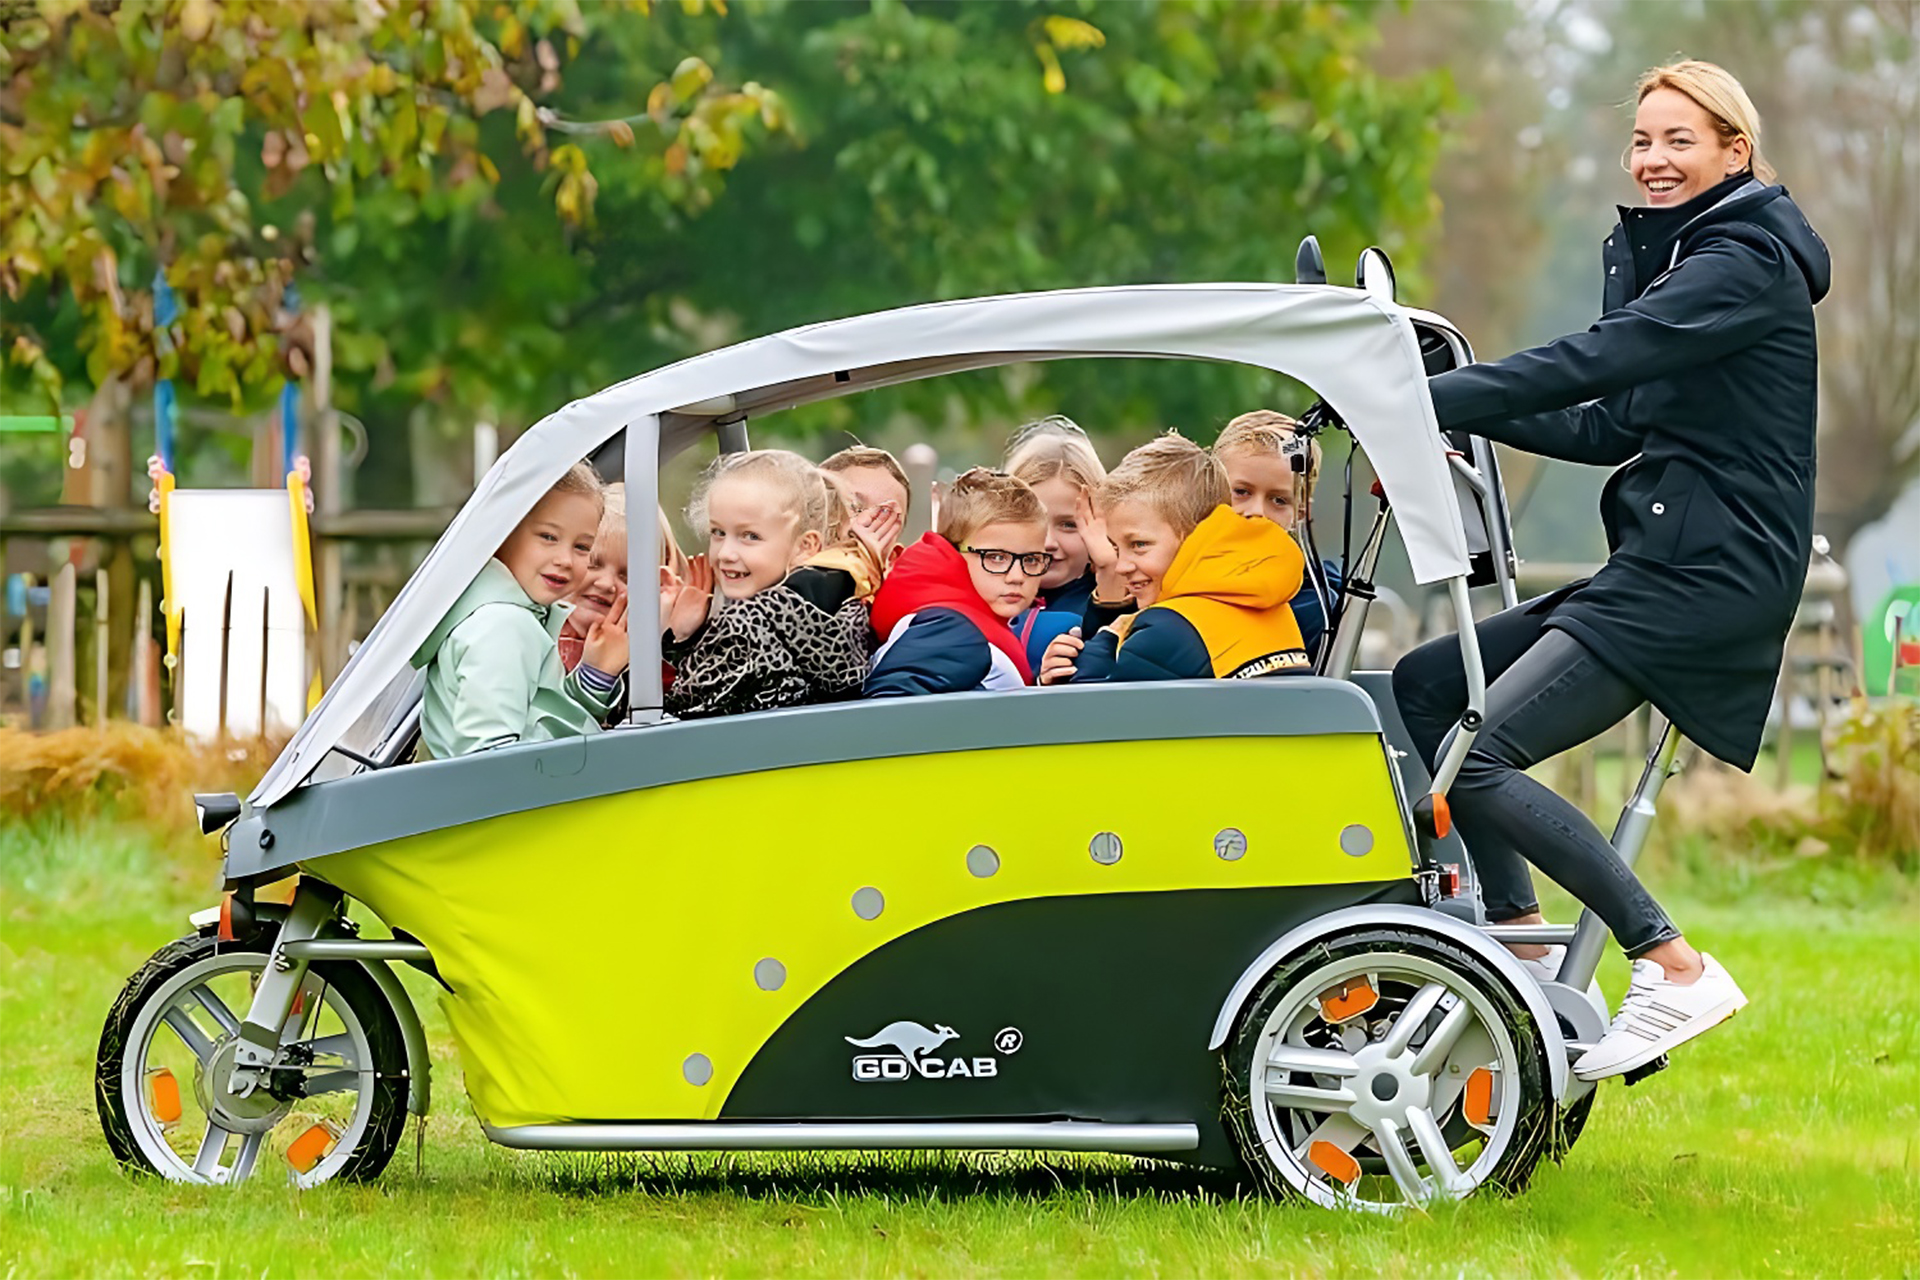 Bicicleta elétrica GoCab transforma o transporte urbano de crianças, proporcionando segurança, sustentabilidade e inovação em um único veículo